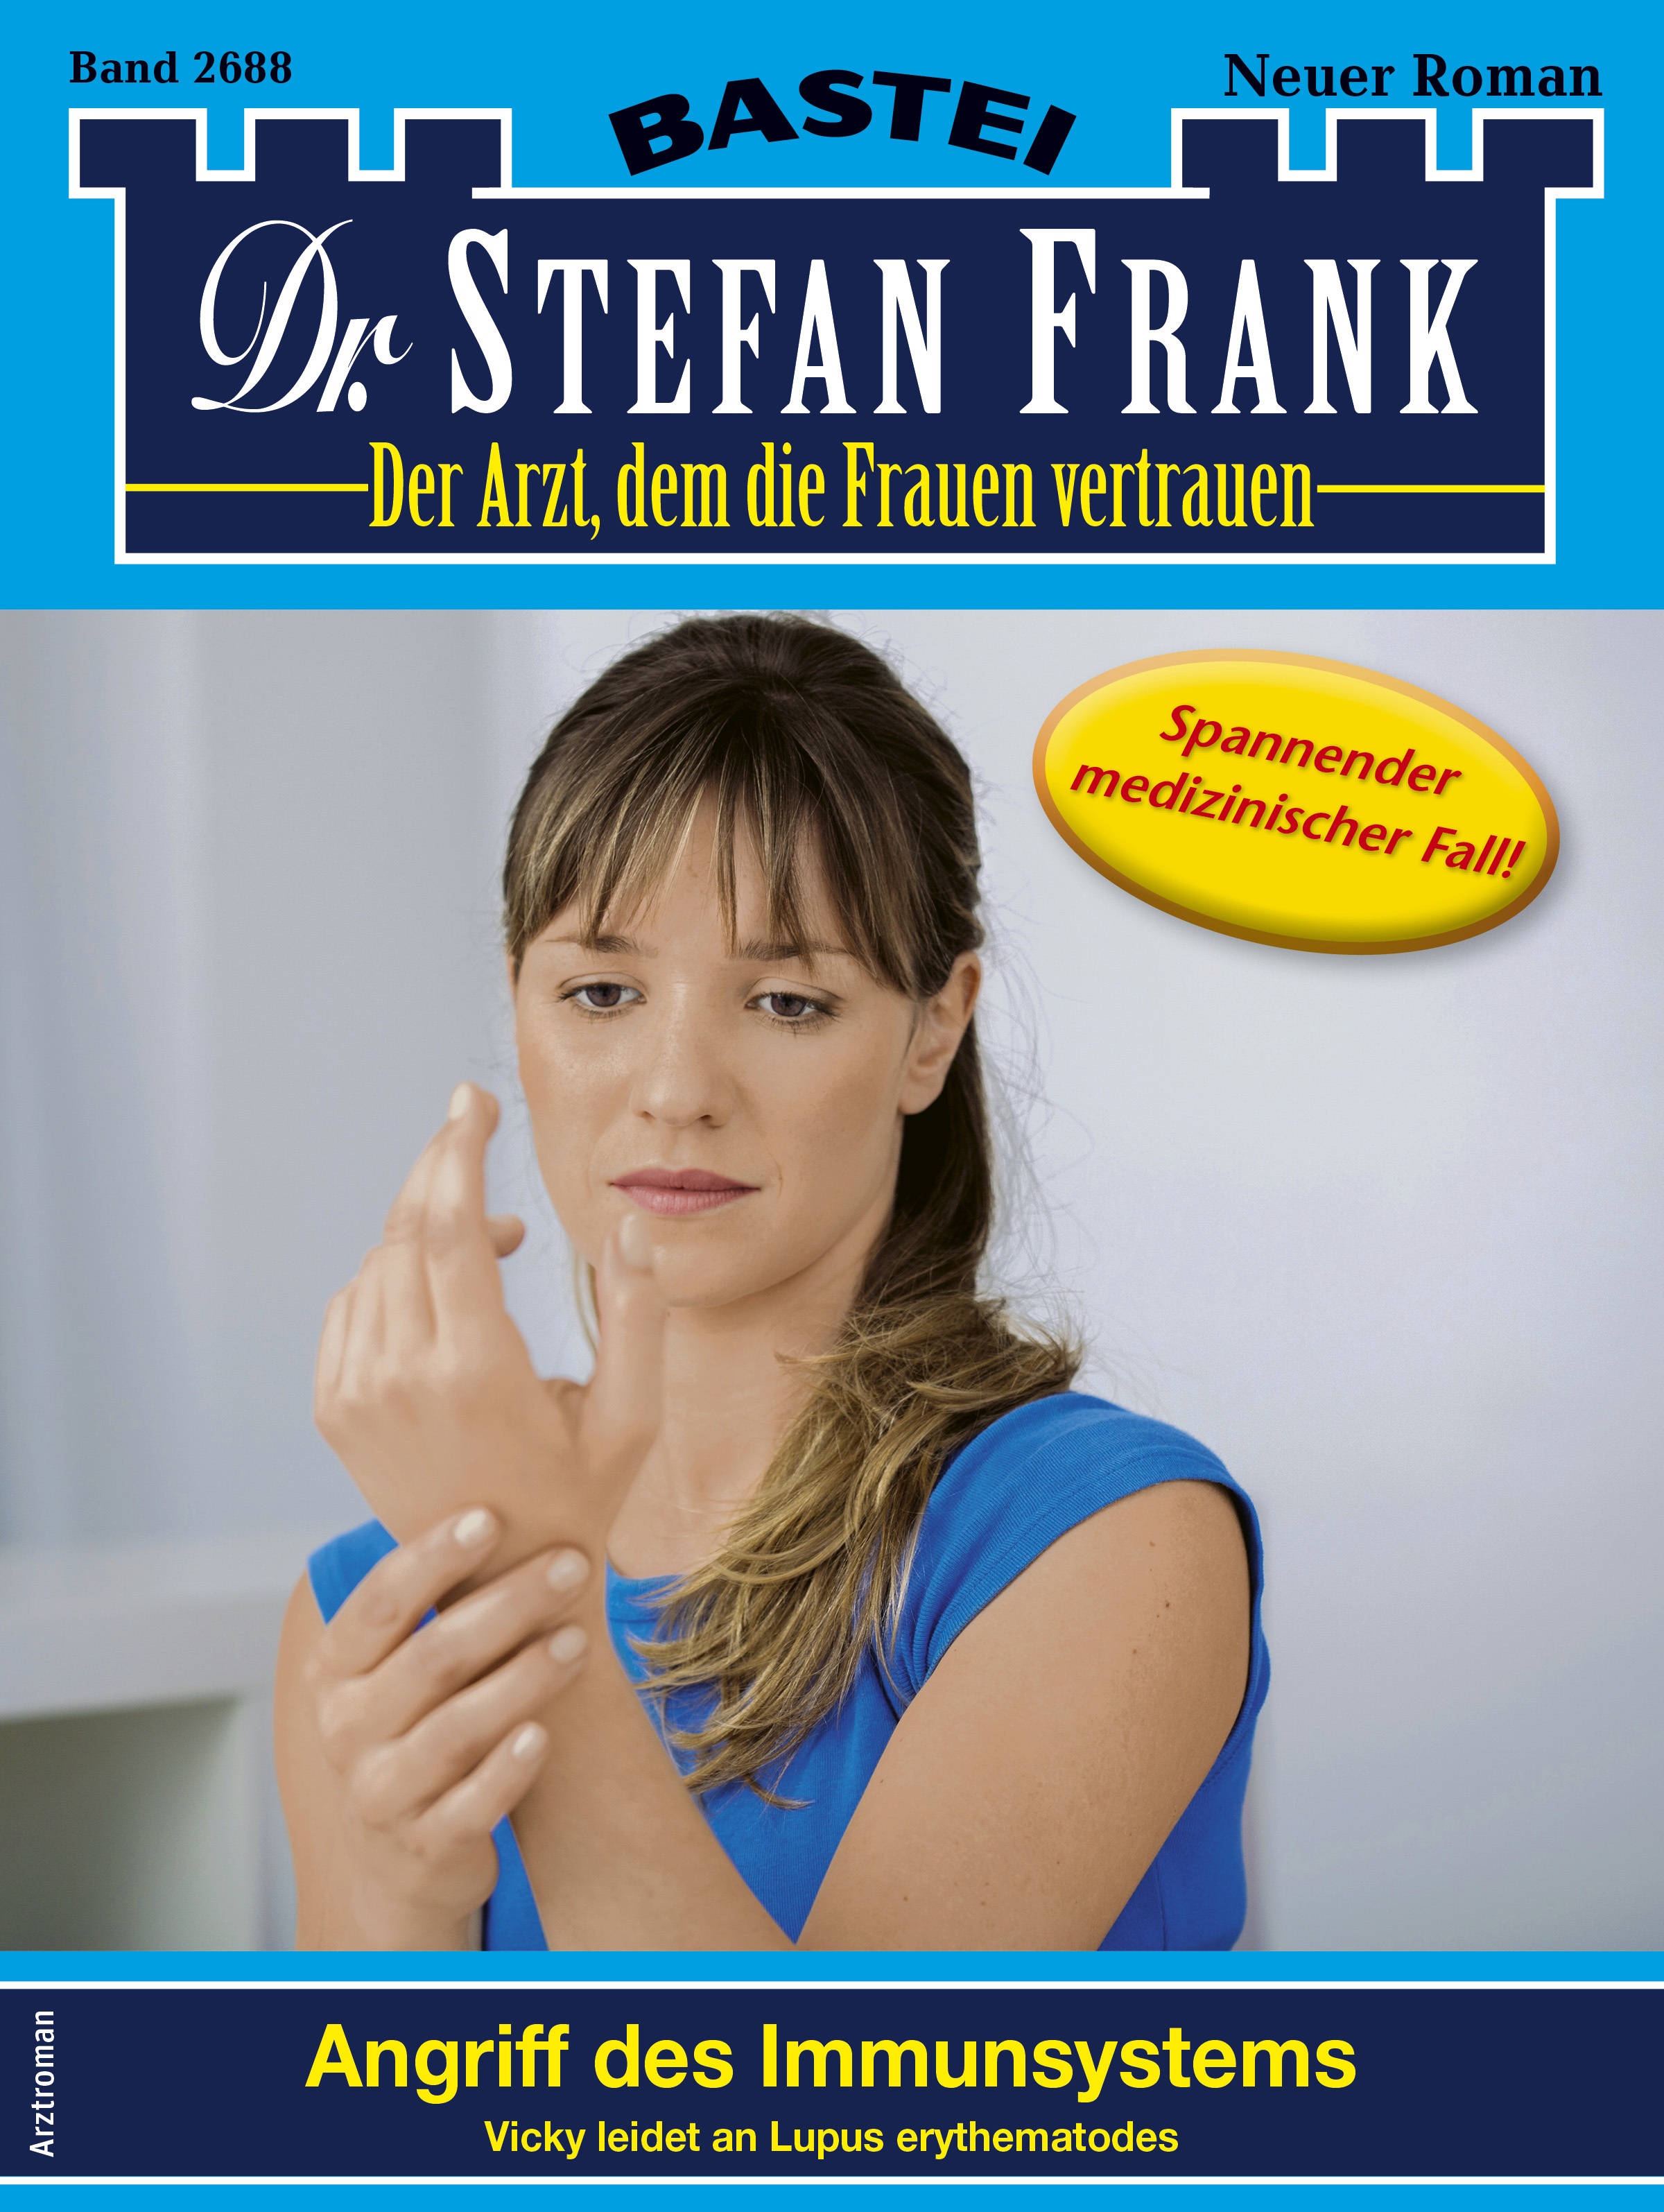 Dr. Stefan Frank 2688